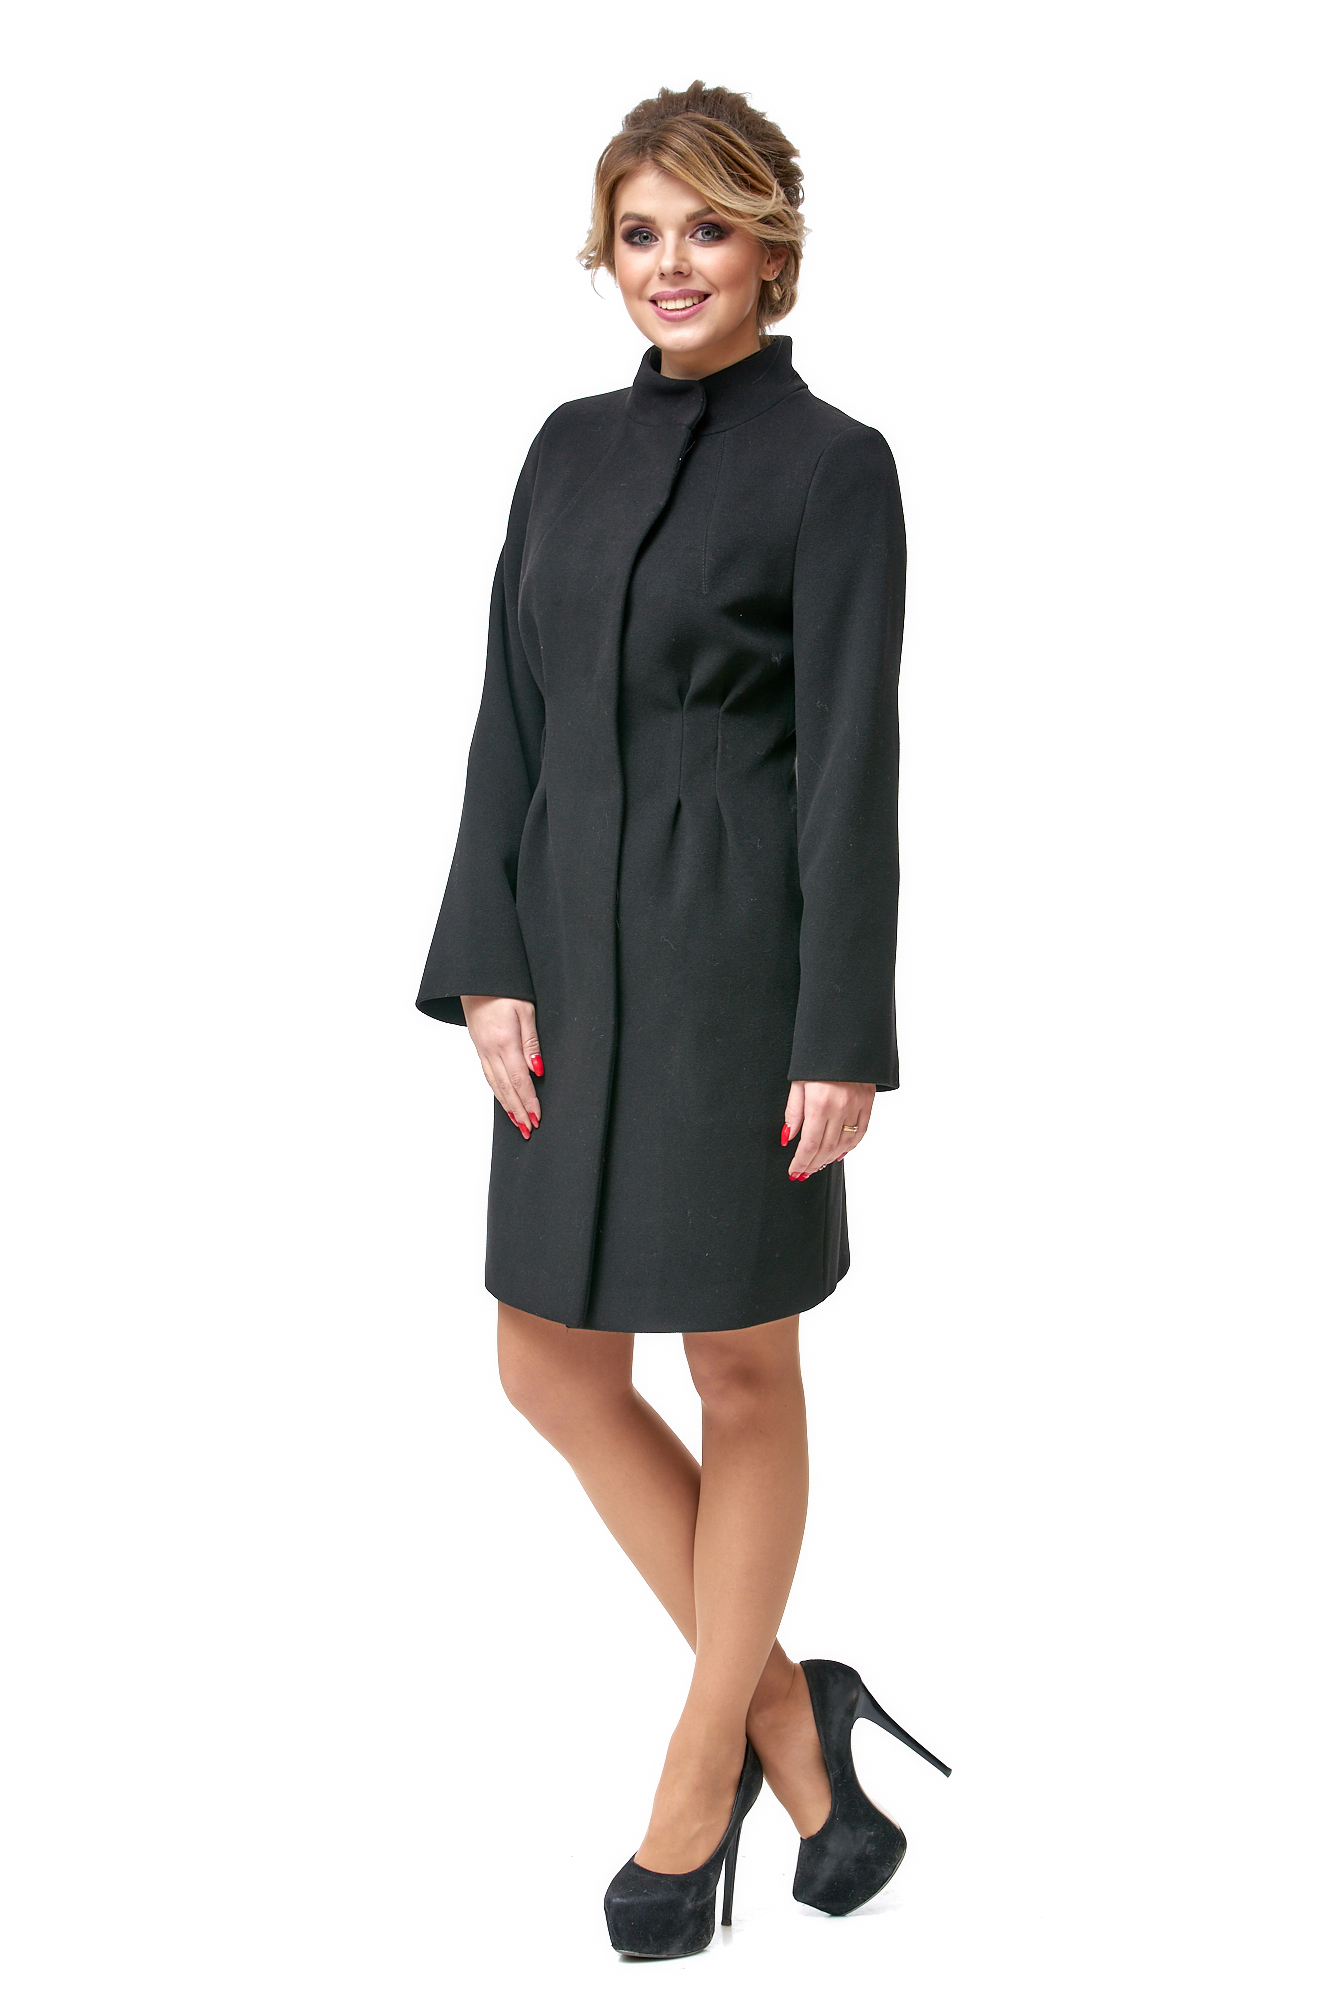 Женское пальто из текстиля с воротником 8002369-2